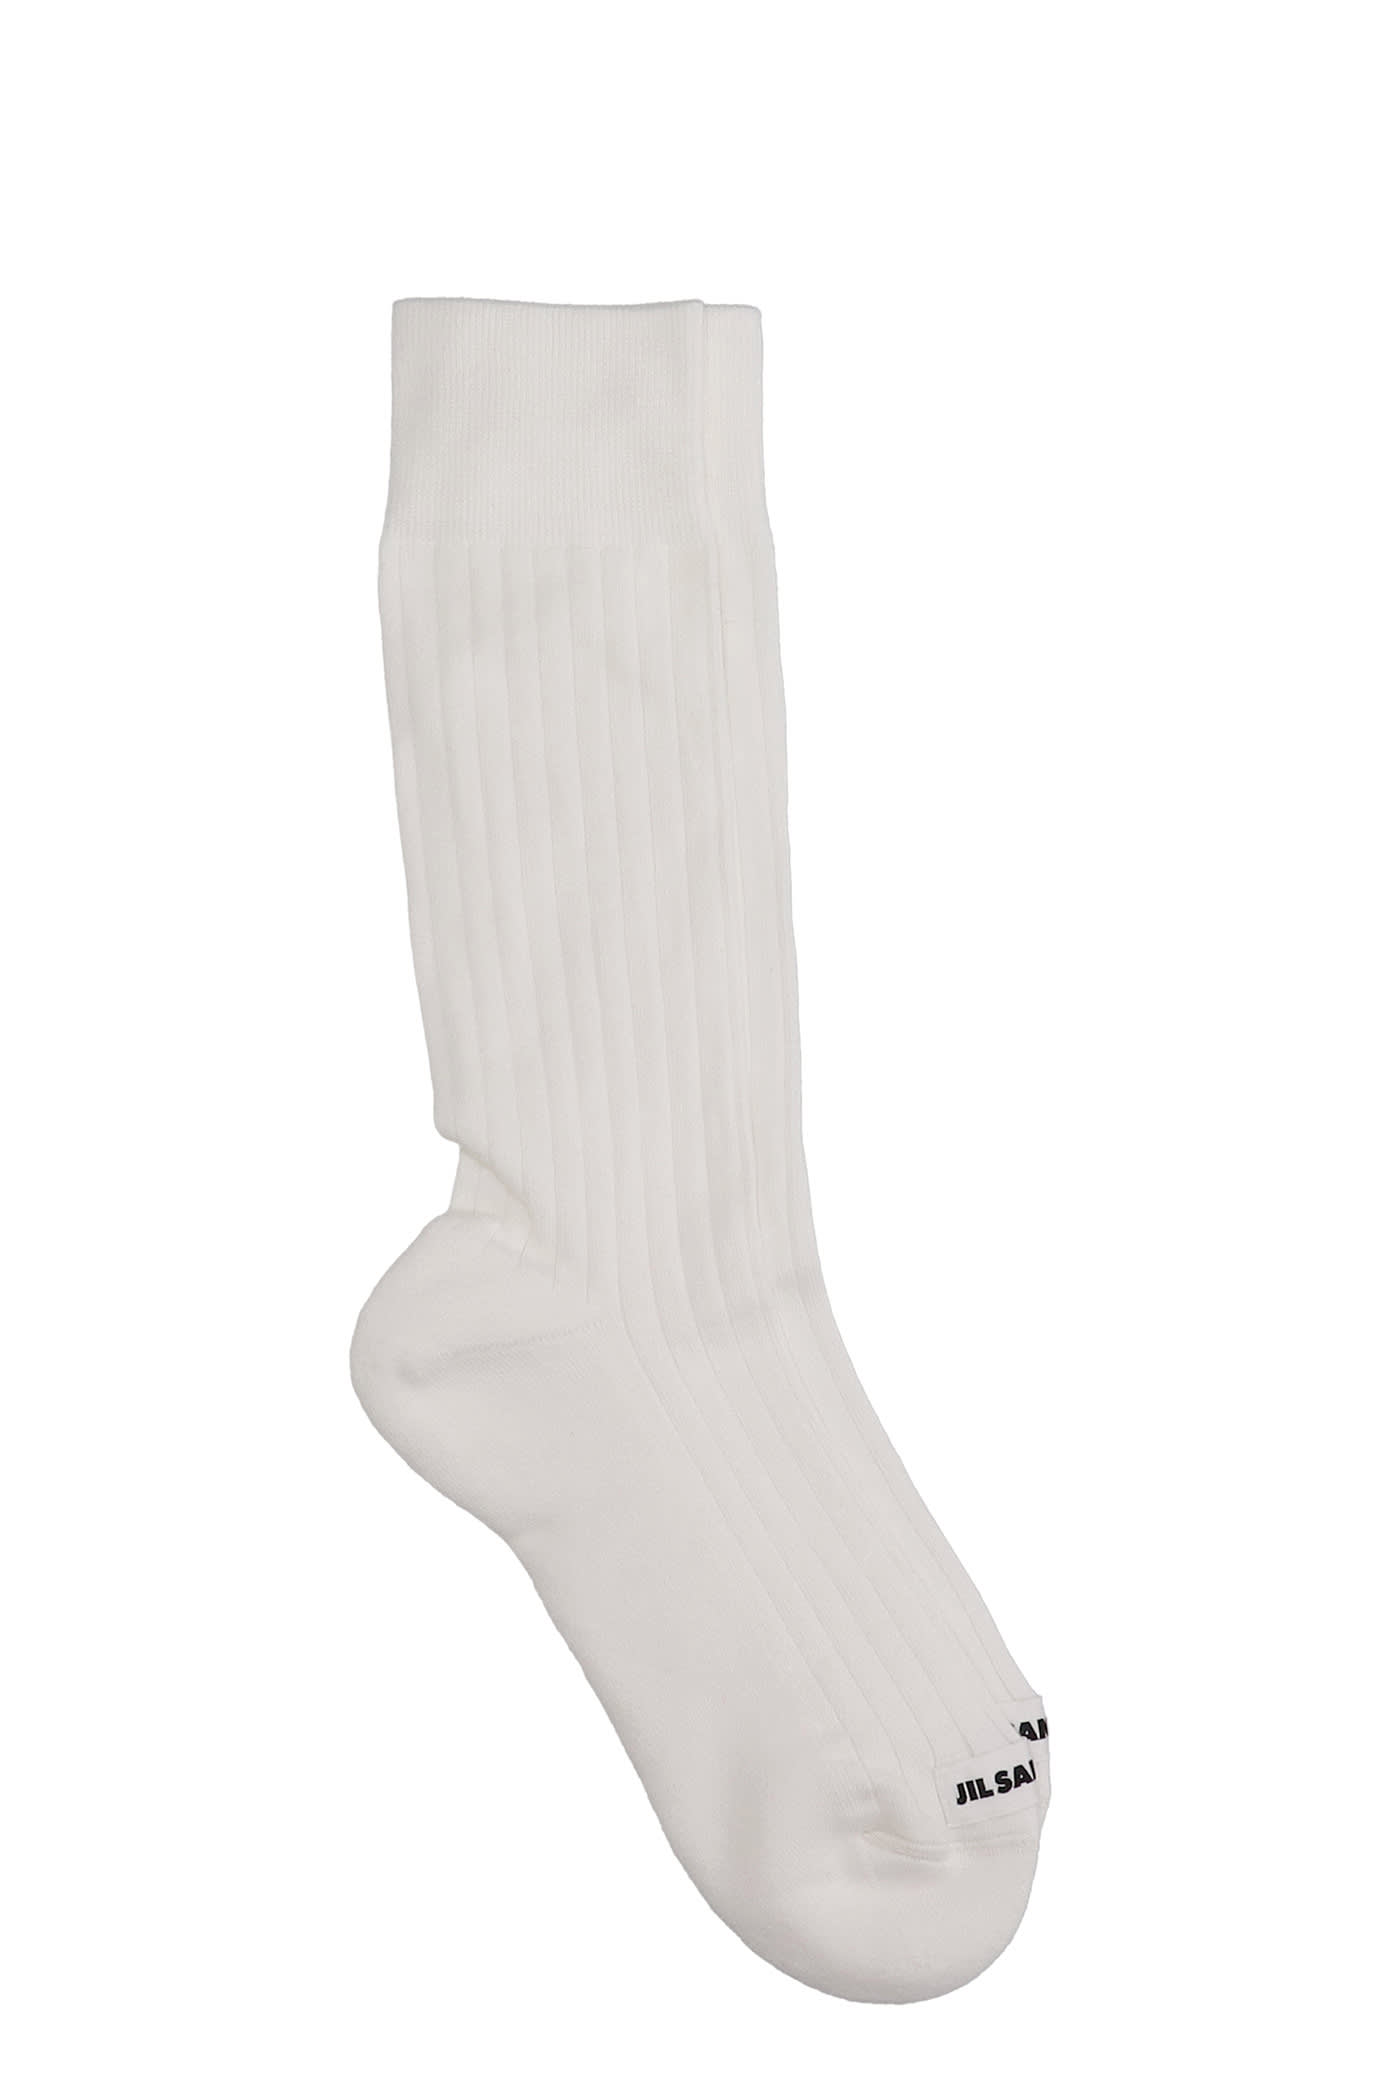 Jil Sander Socks In White Cotton